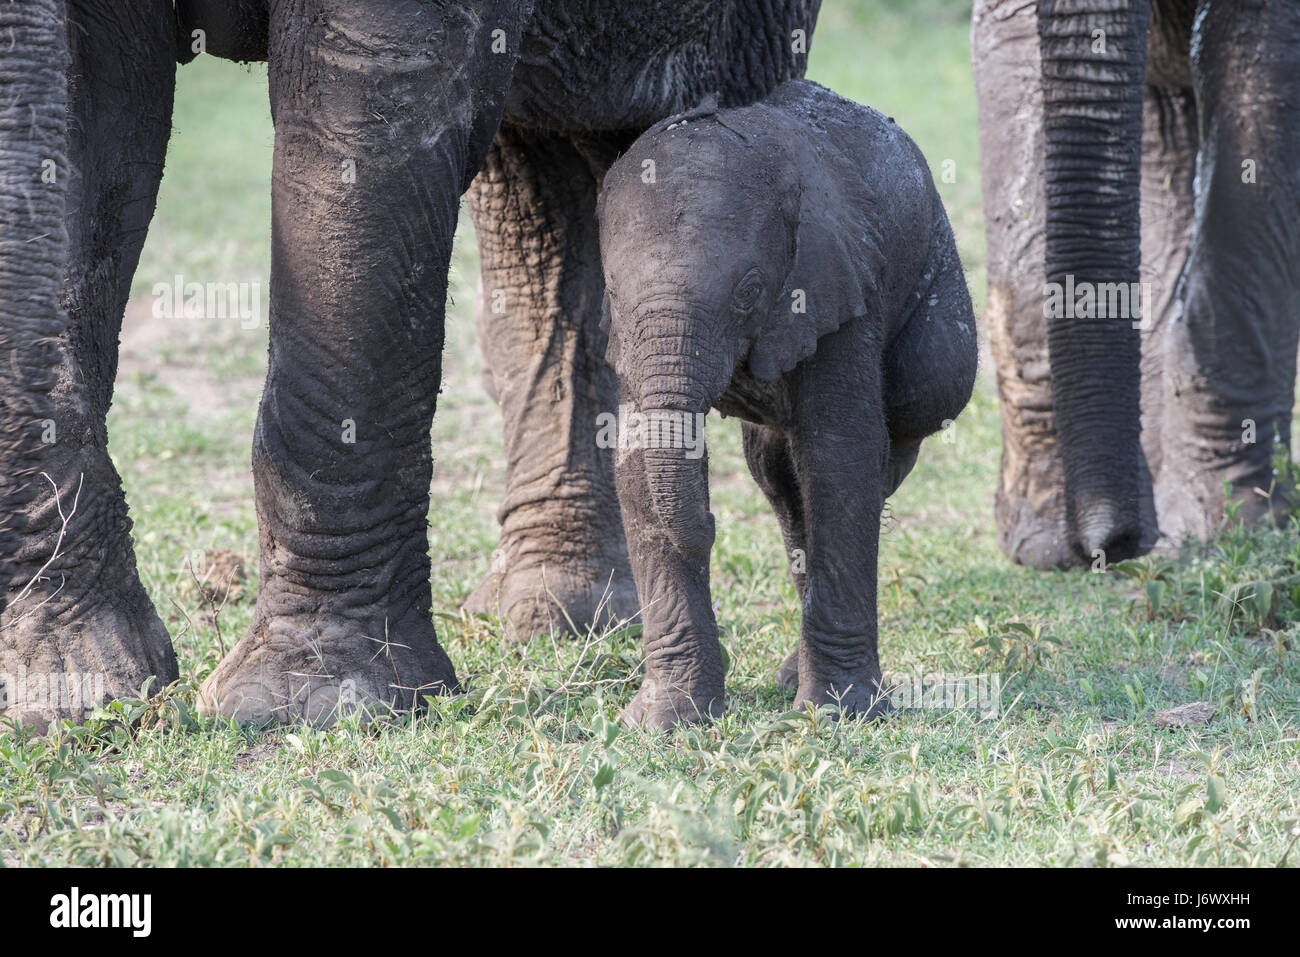 Baby Elephant, Tanzania Stock Photo